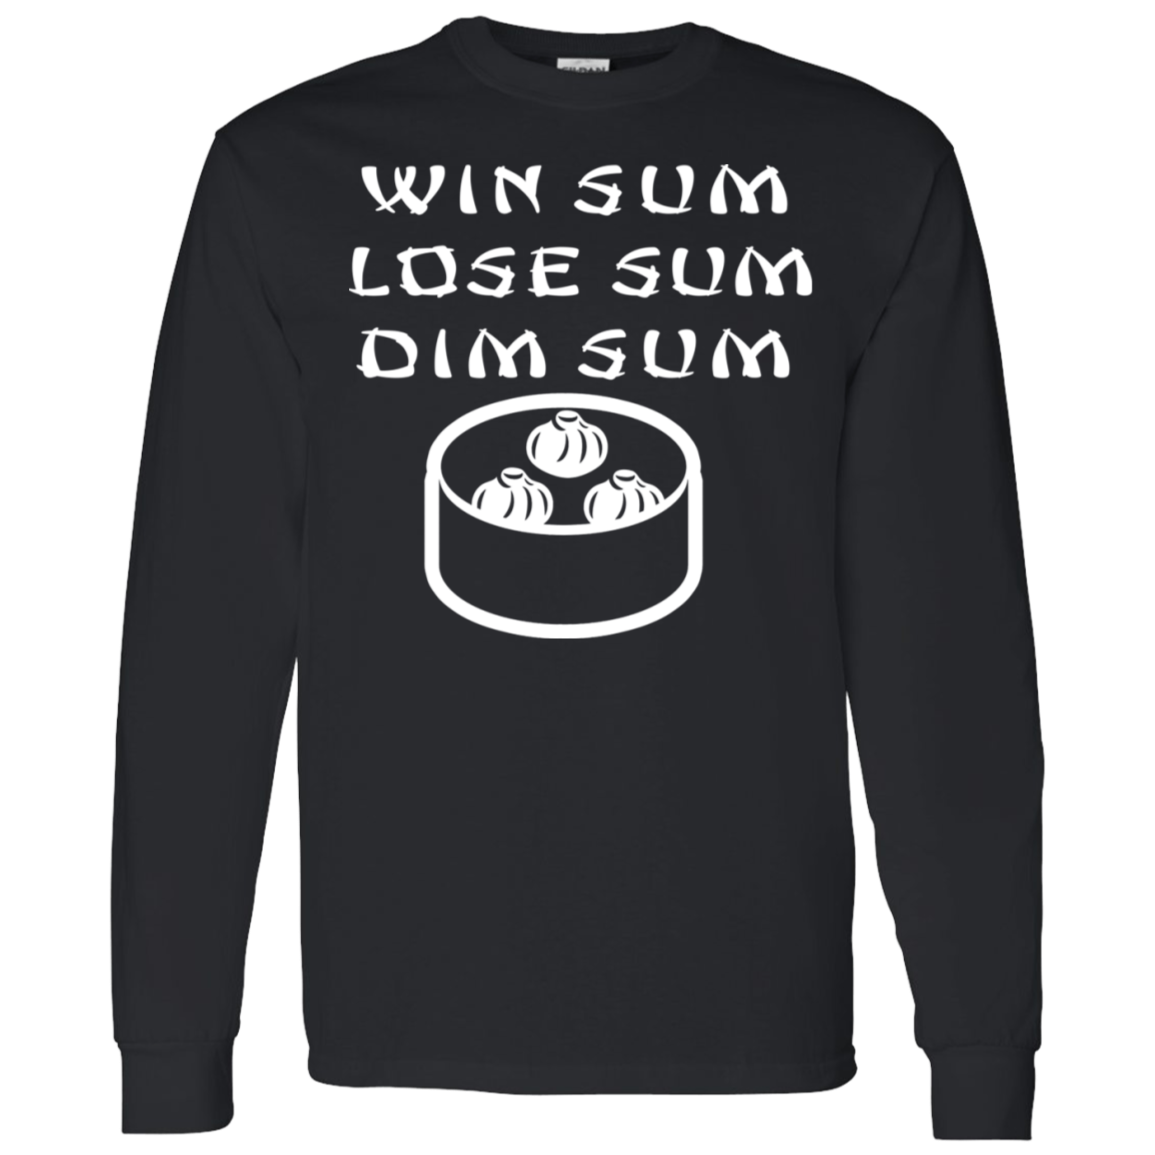 ArtichokeUSA Custom Design. Win Sum Lose Some. Dim Sum. LS T-Shirt 5.3 oz.